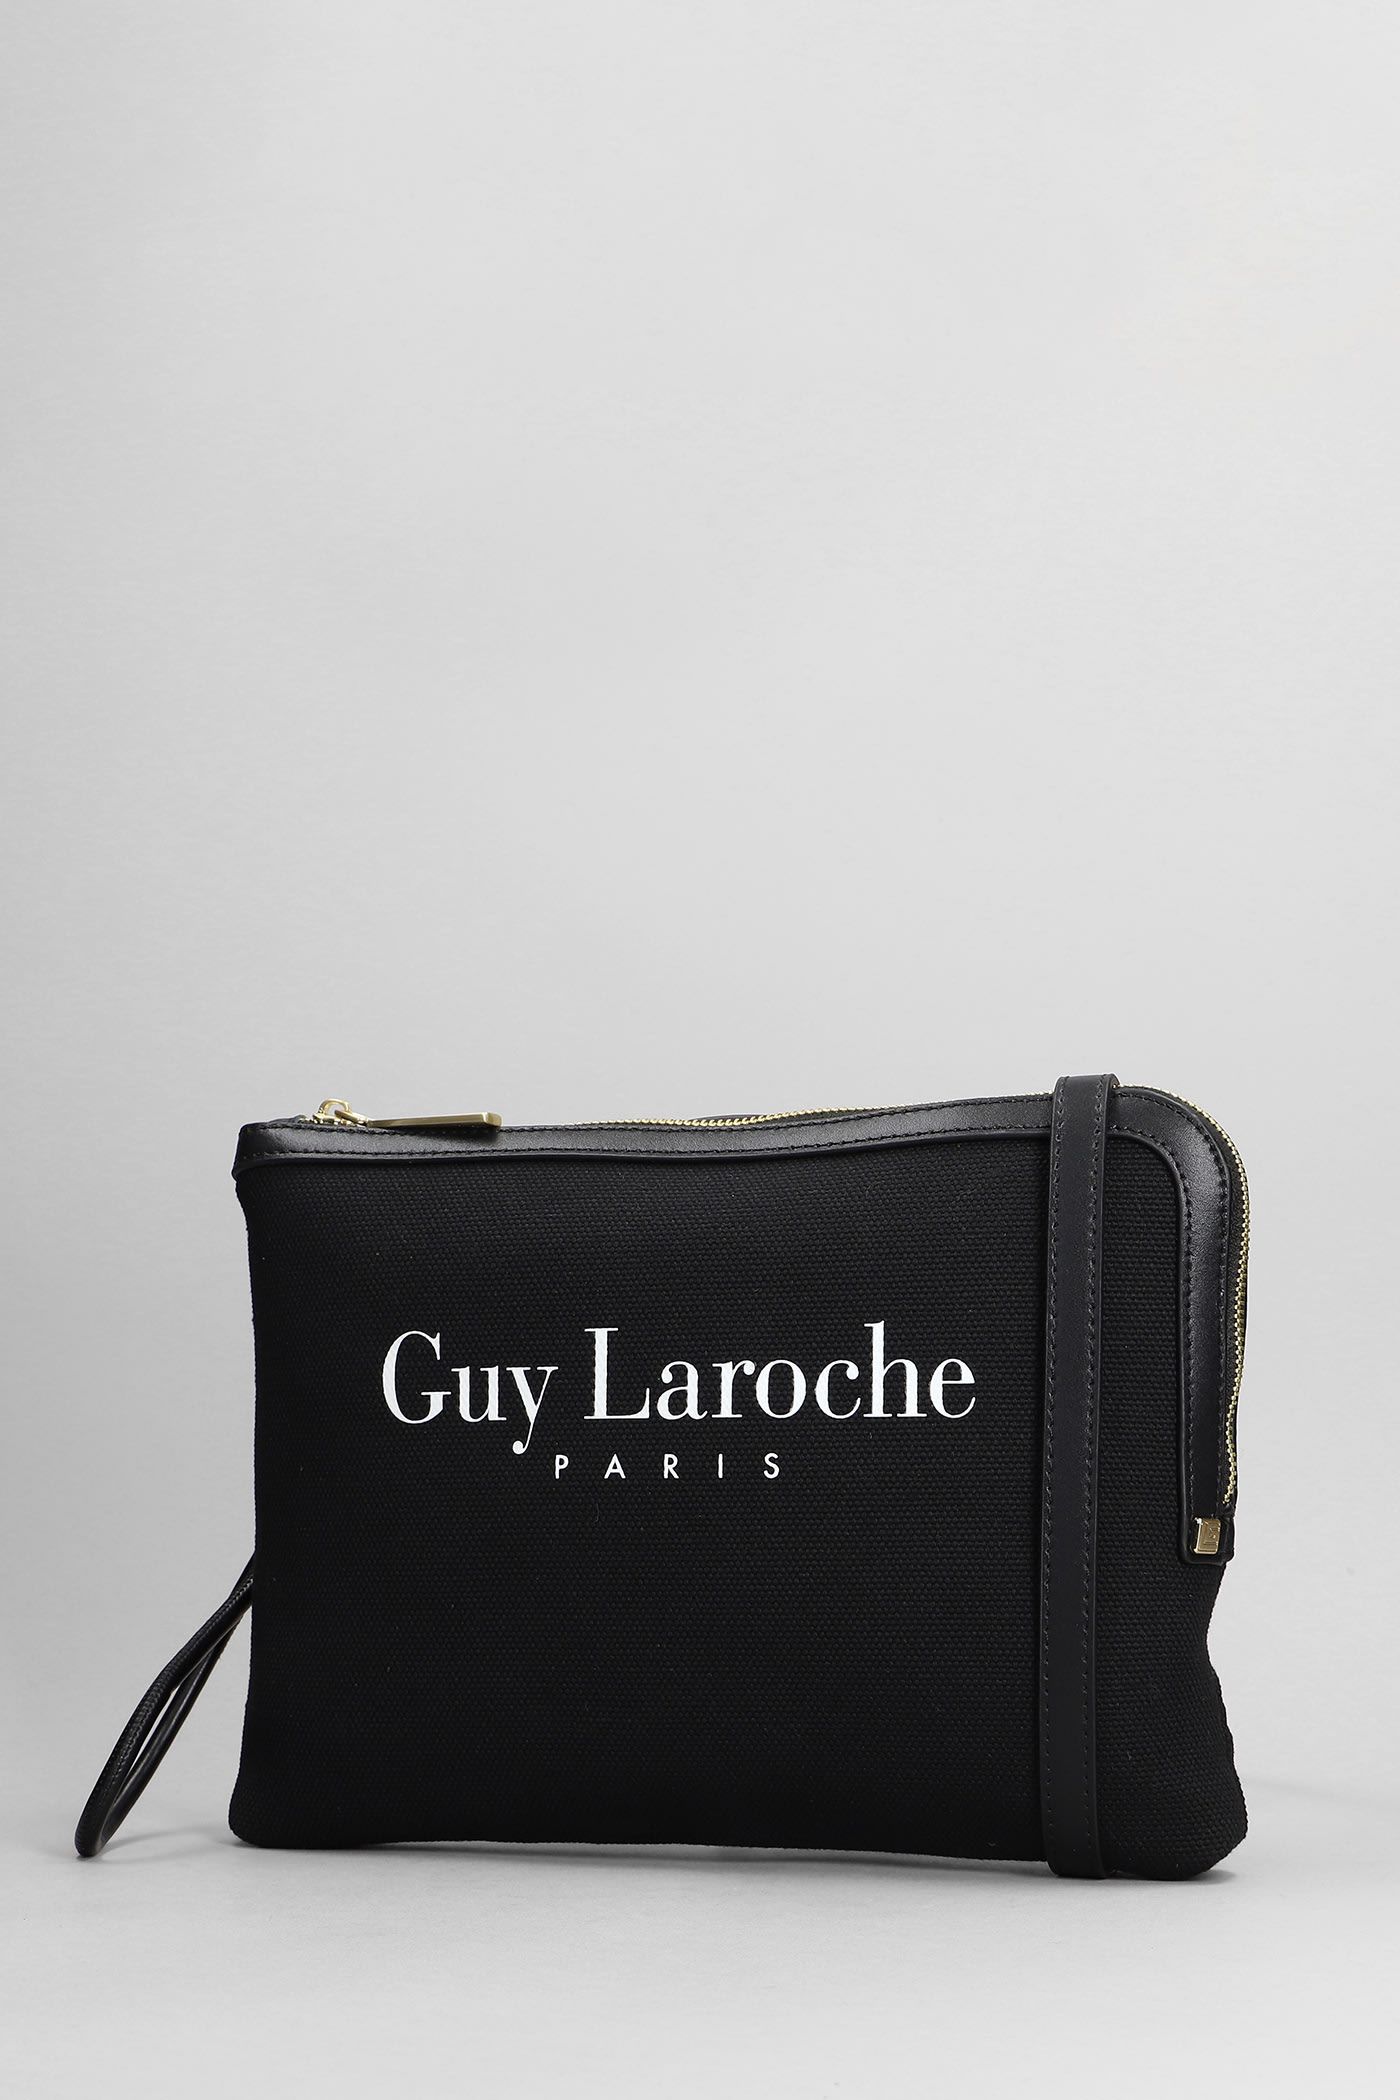 Guy Laroche Logo Shoulder Bag in Black